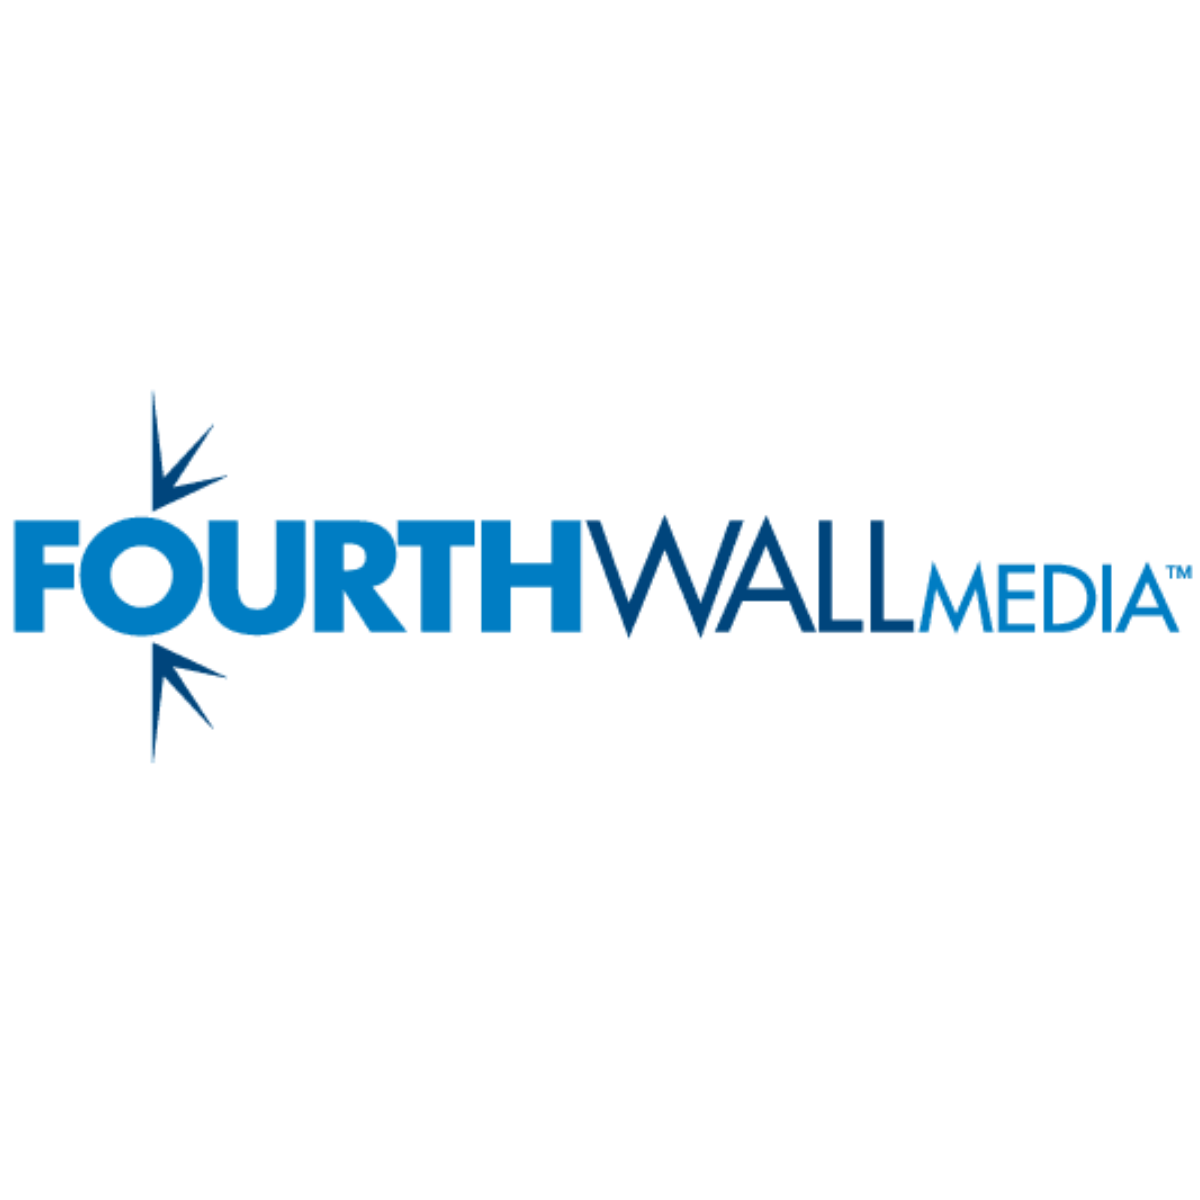 FourthWall Media